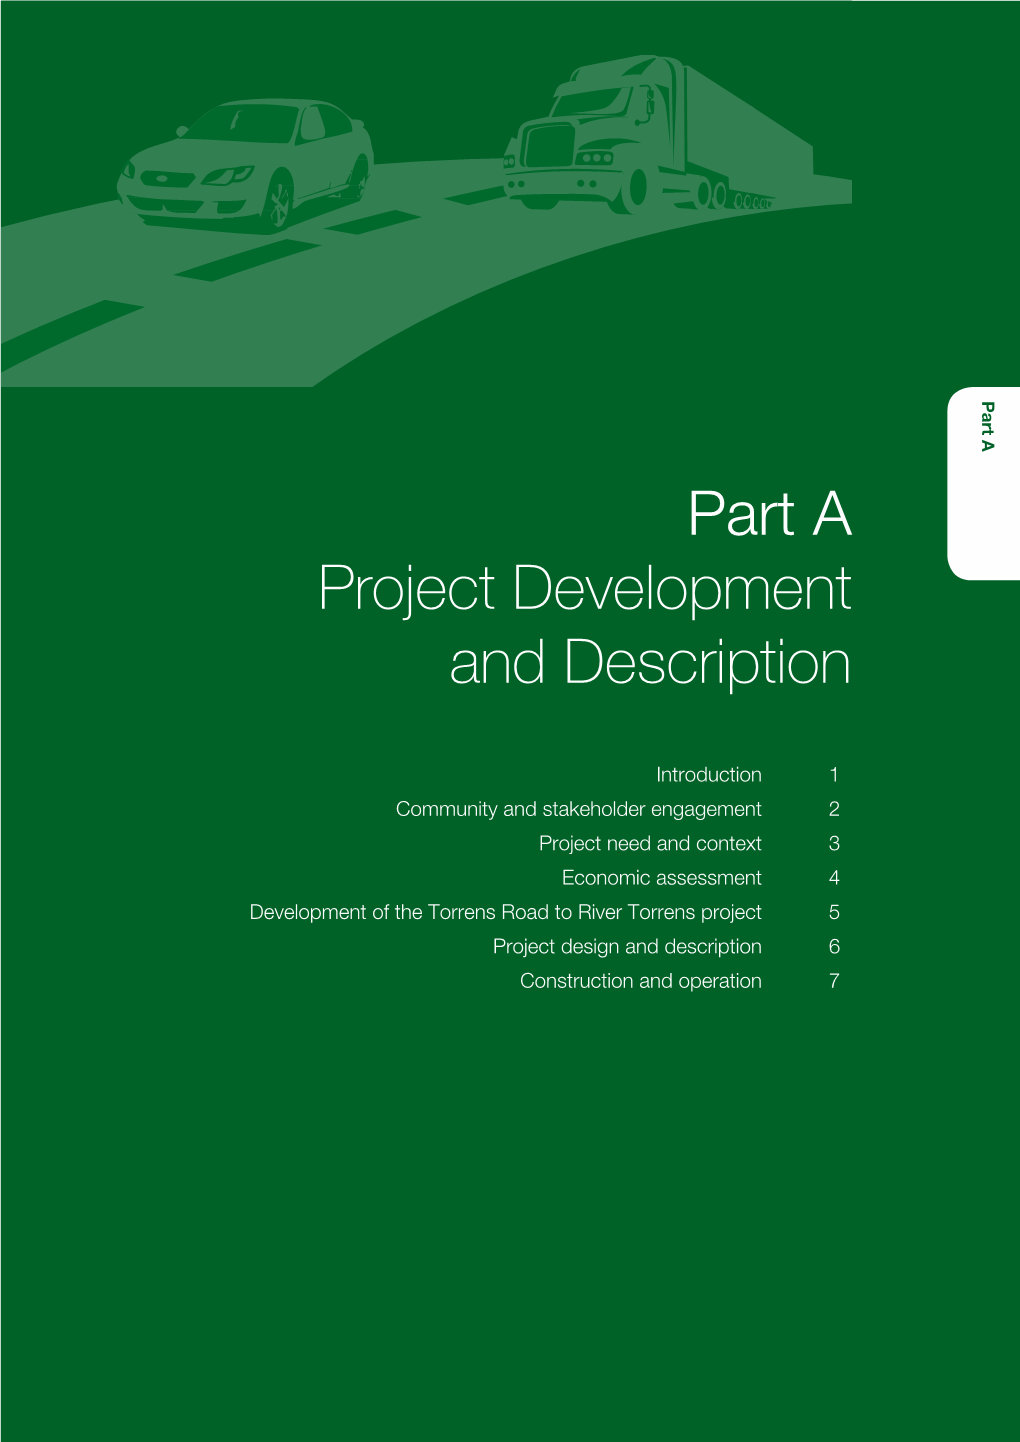 Part a – Project Development and Description